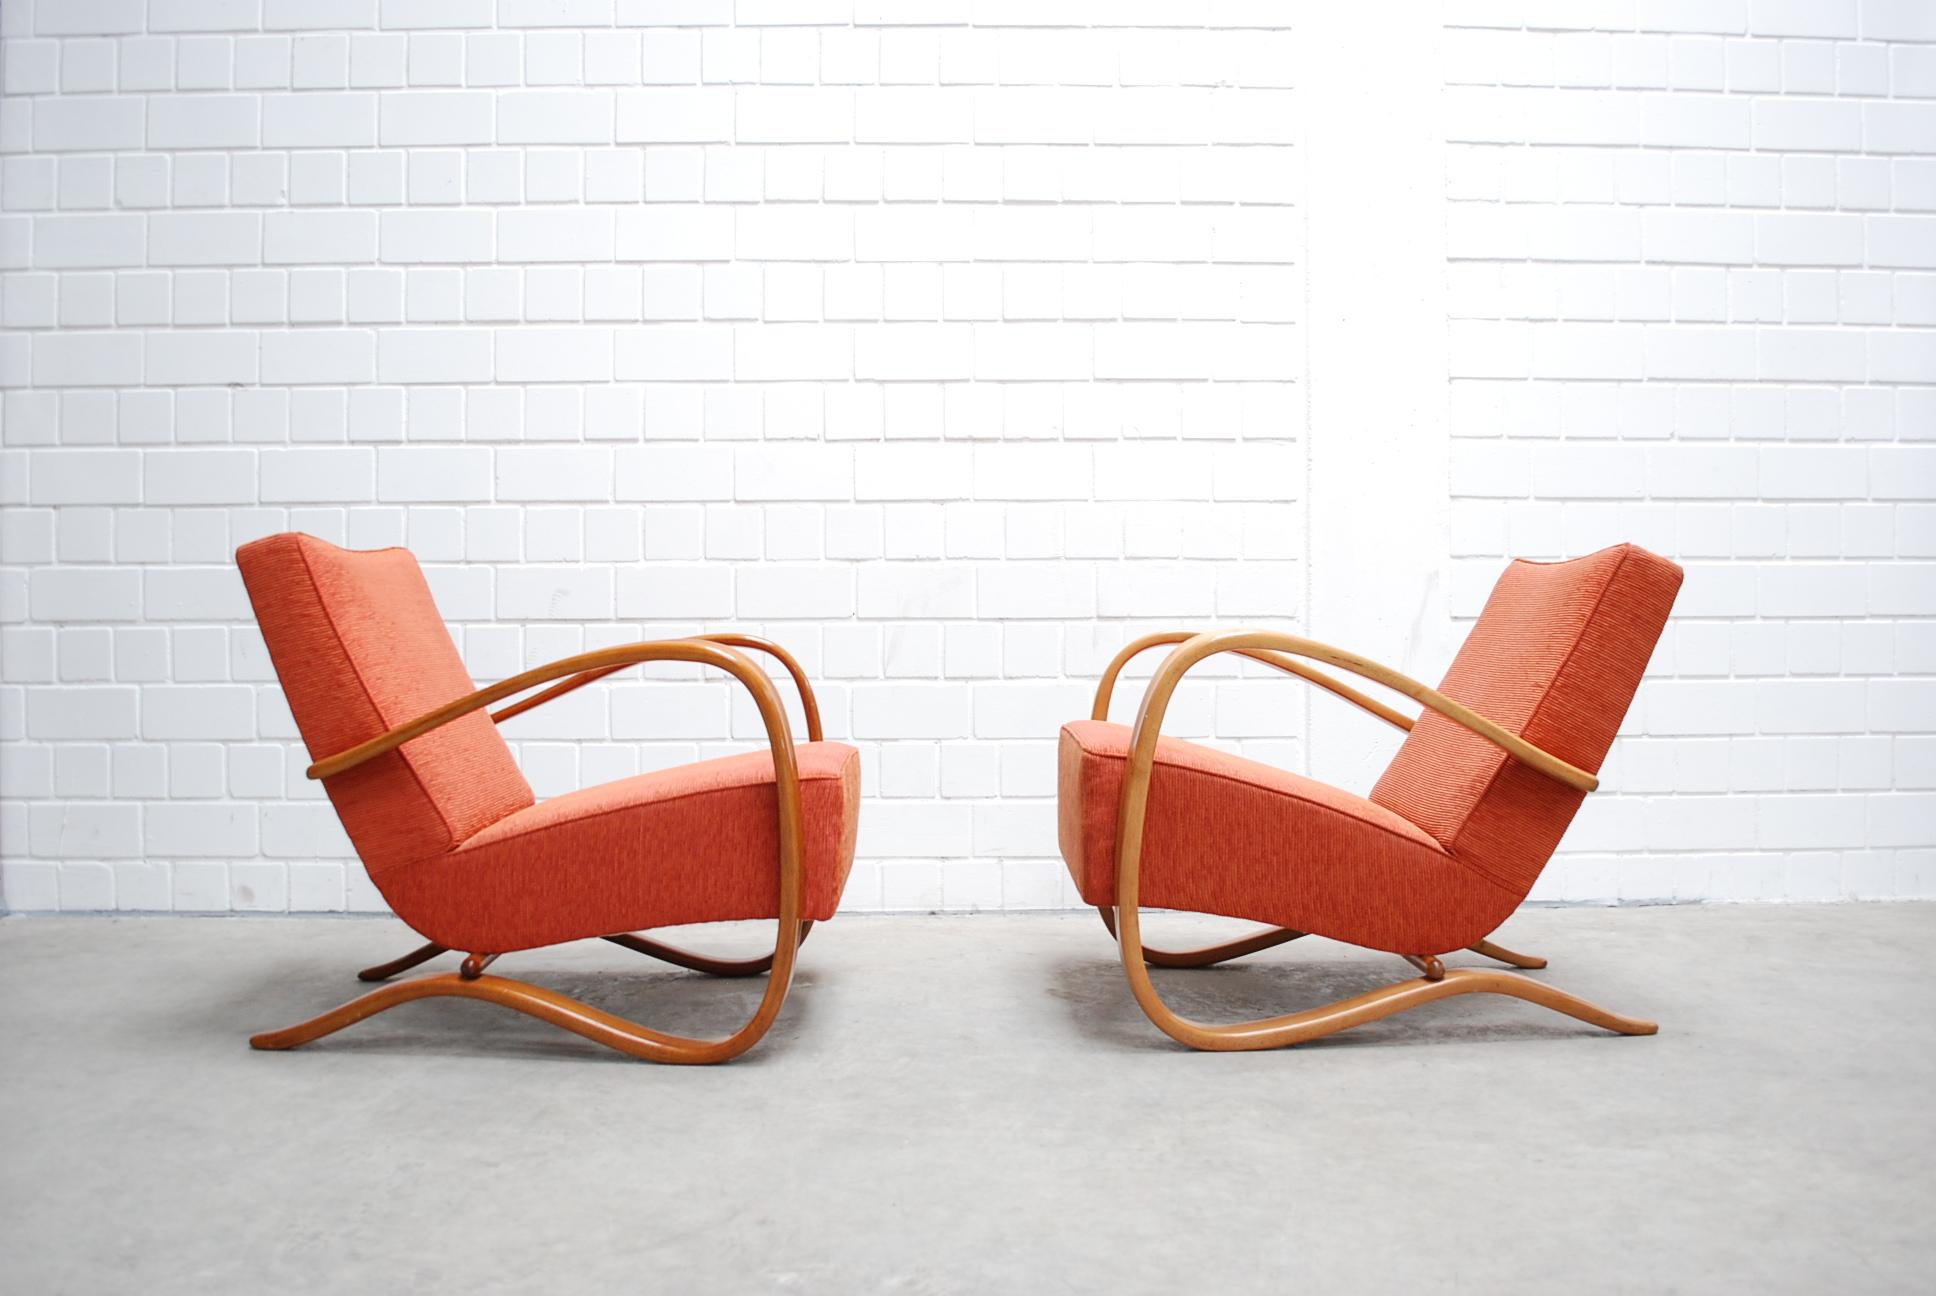 Ces fauteuils tchèques aux références de la période Art Déco sont conçus par Jindrich Halabala.
Le fabricant est Spojené UP Zàvody.
Les accoudoirs courbes sont en hêtre et sont laqués.
Les chaises sont restaurées et retapissées avec un nouveau